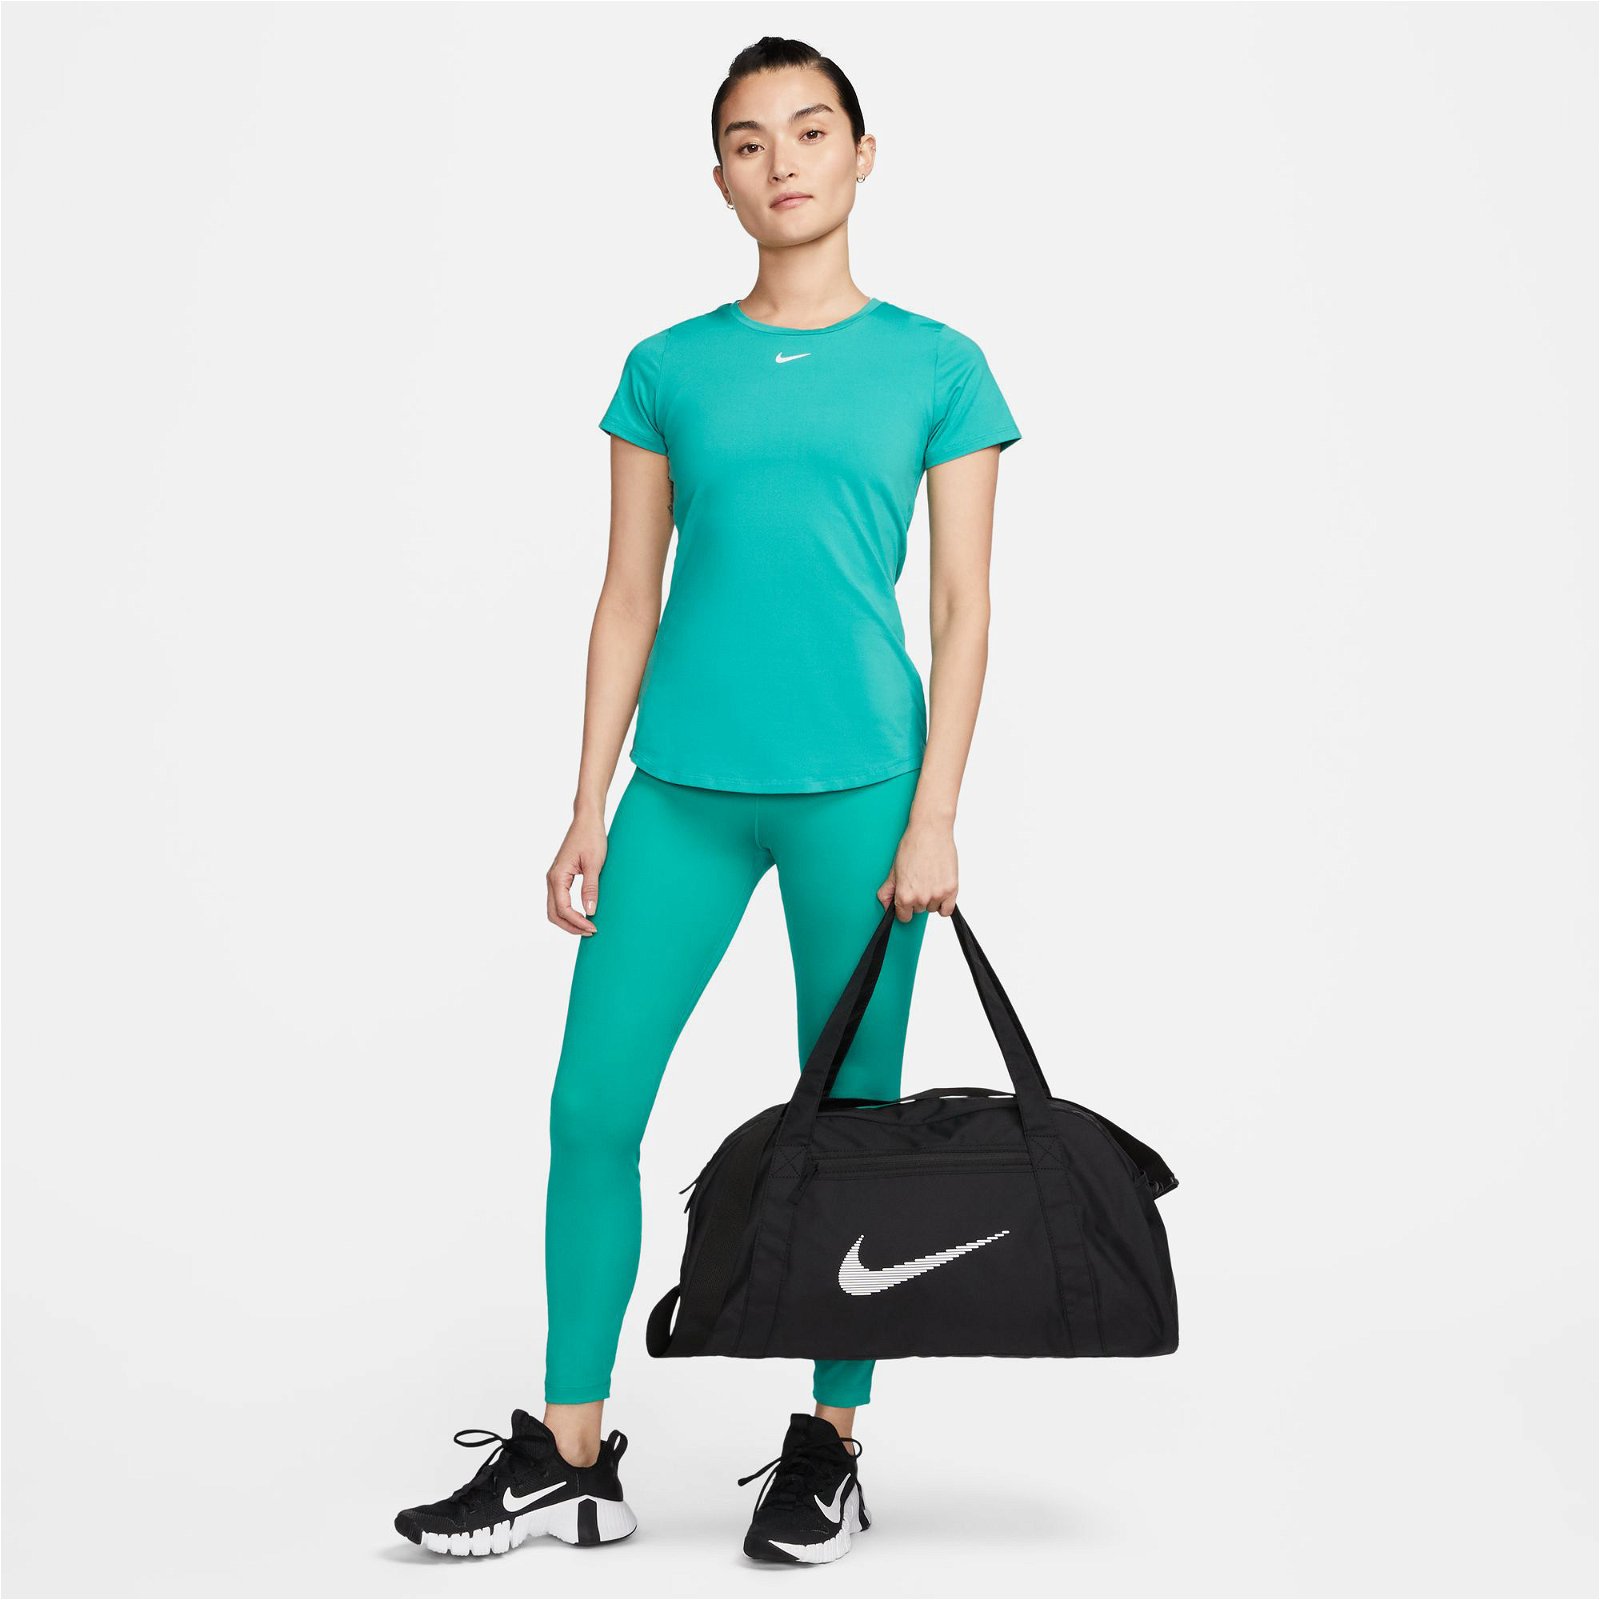 Nike Çanta Modelleri ve Fiyatları